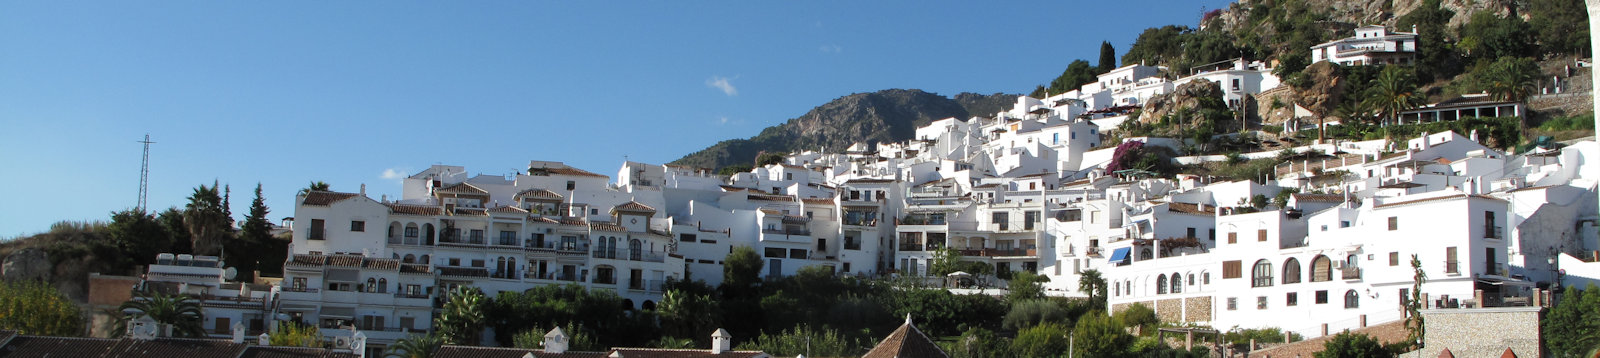 Frigiliana, en hvid bjerglandsby 50 km øst for Málaga